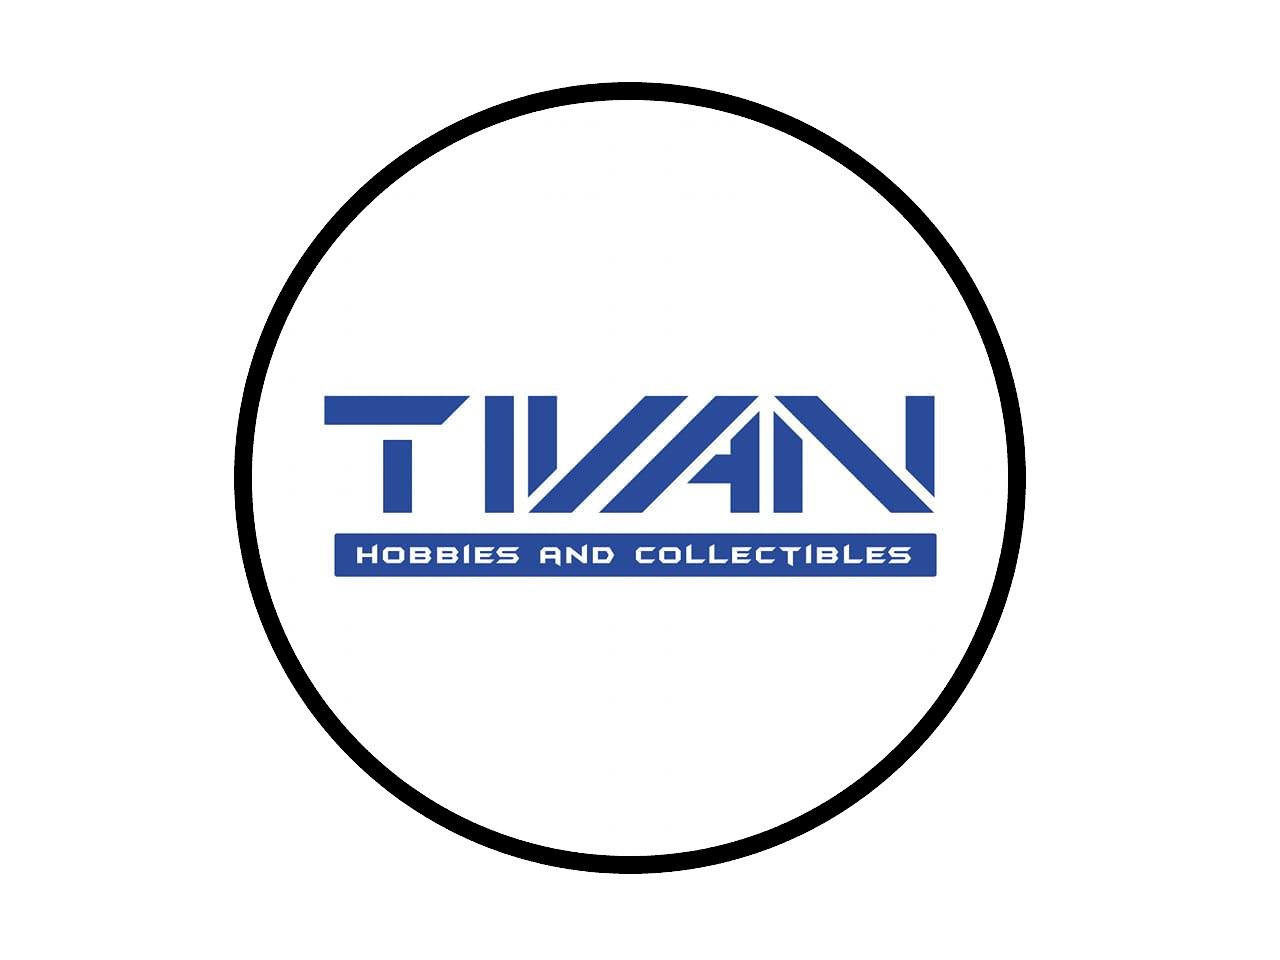 www.tivanhc.com